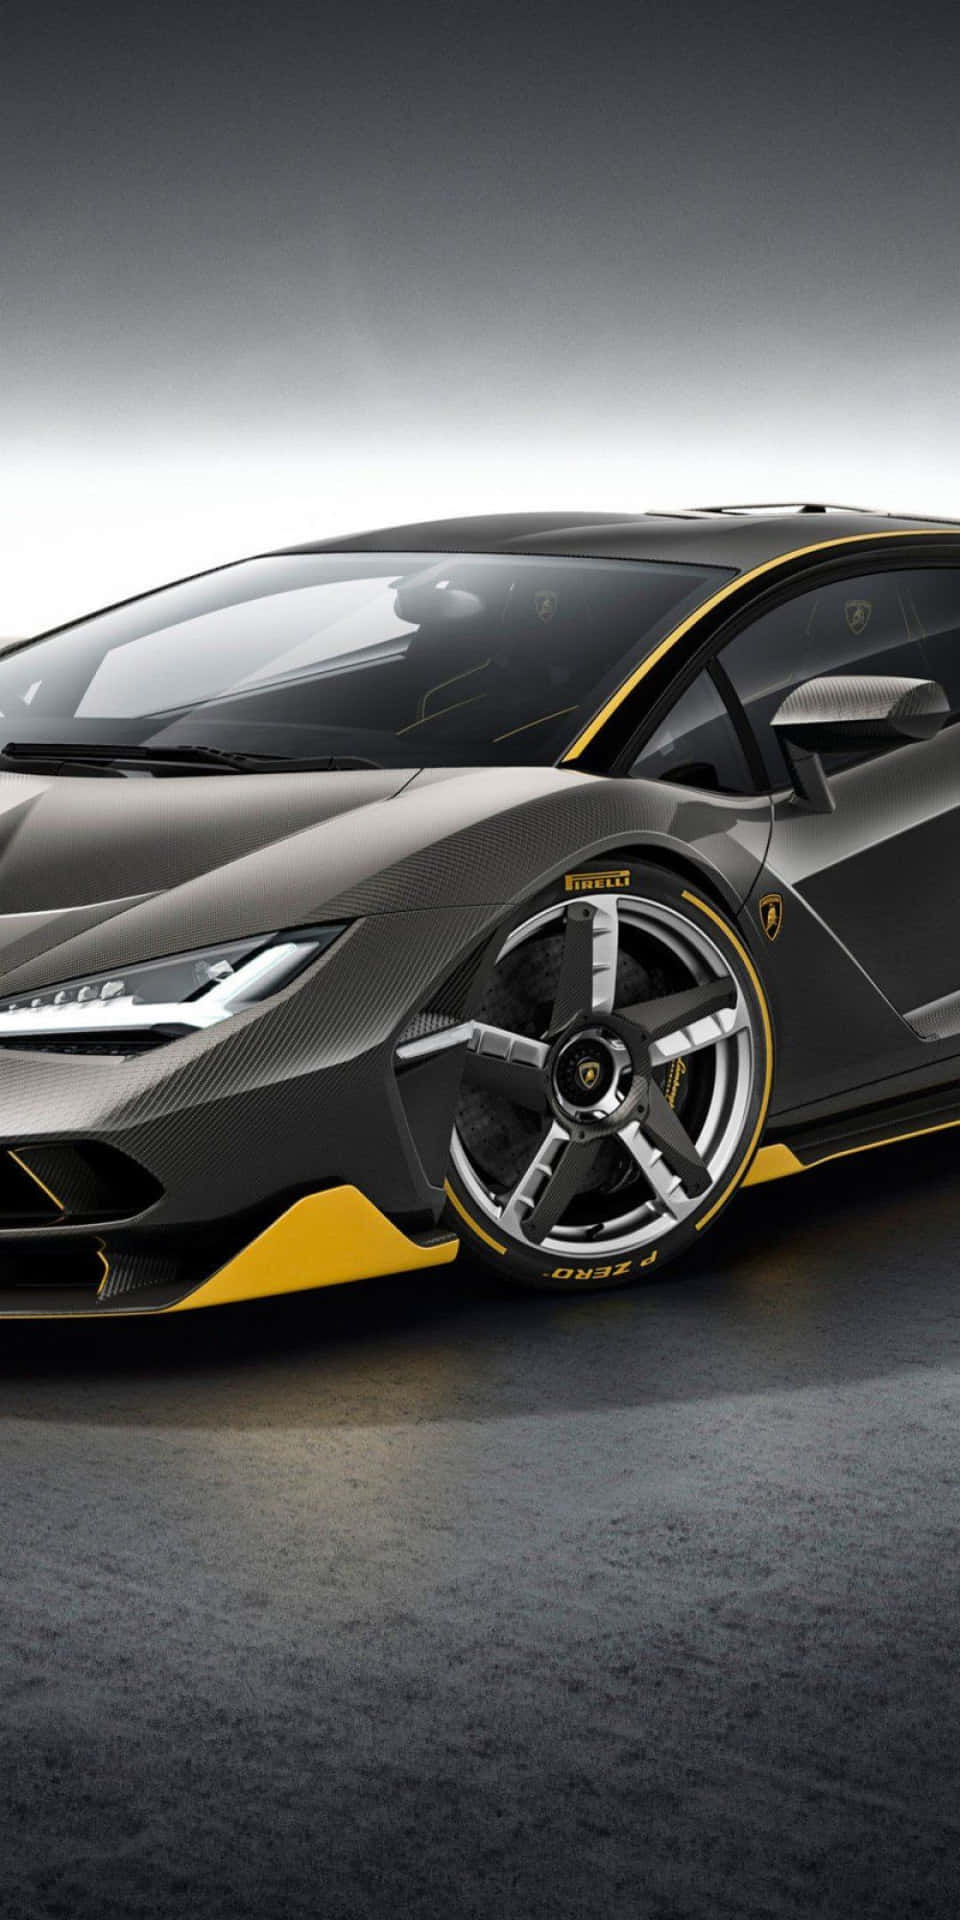 Denperfekta Kombinationen Av Stil Och Kraft: Pixel 3 Lamborghini